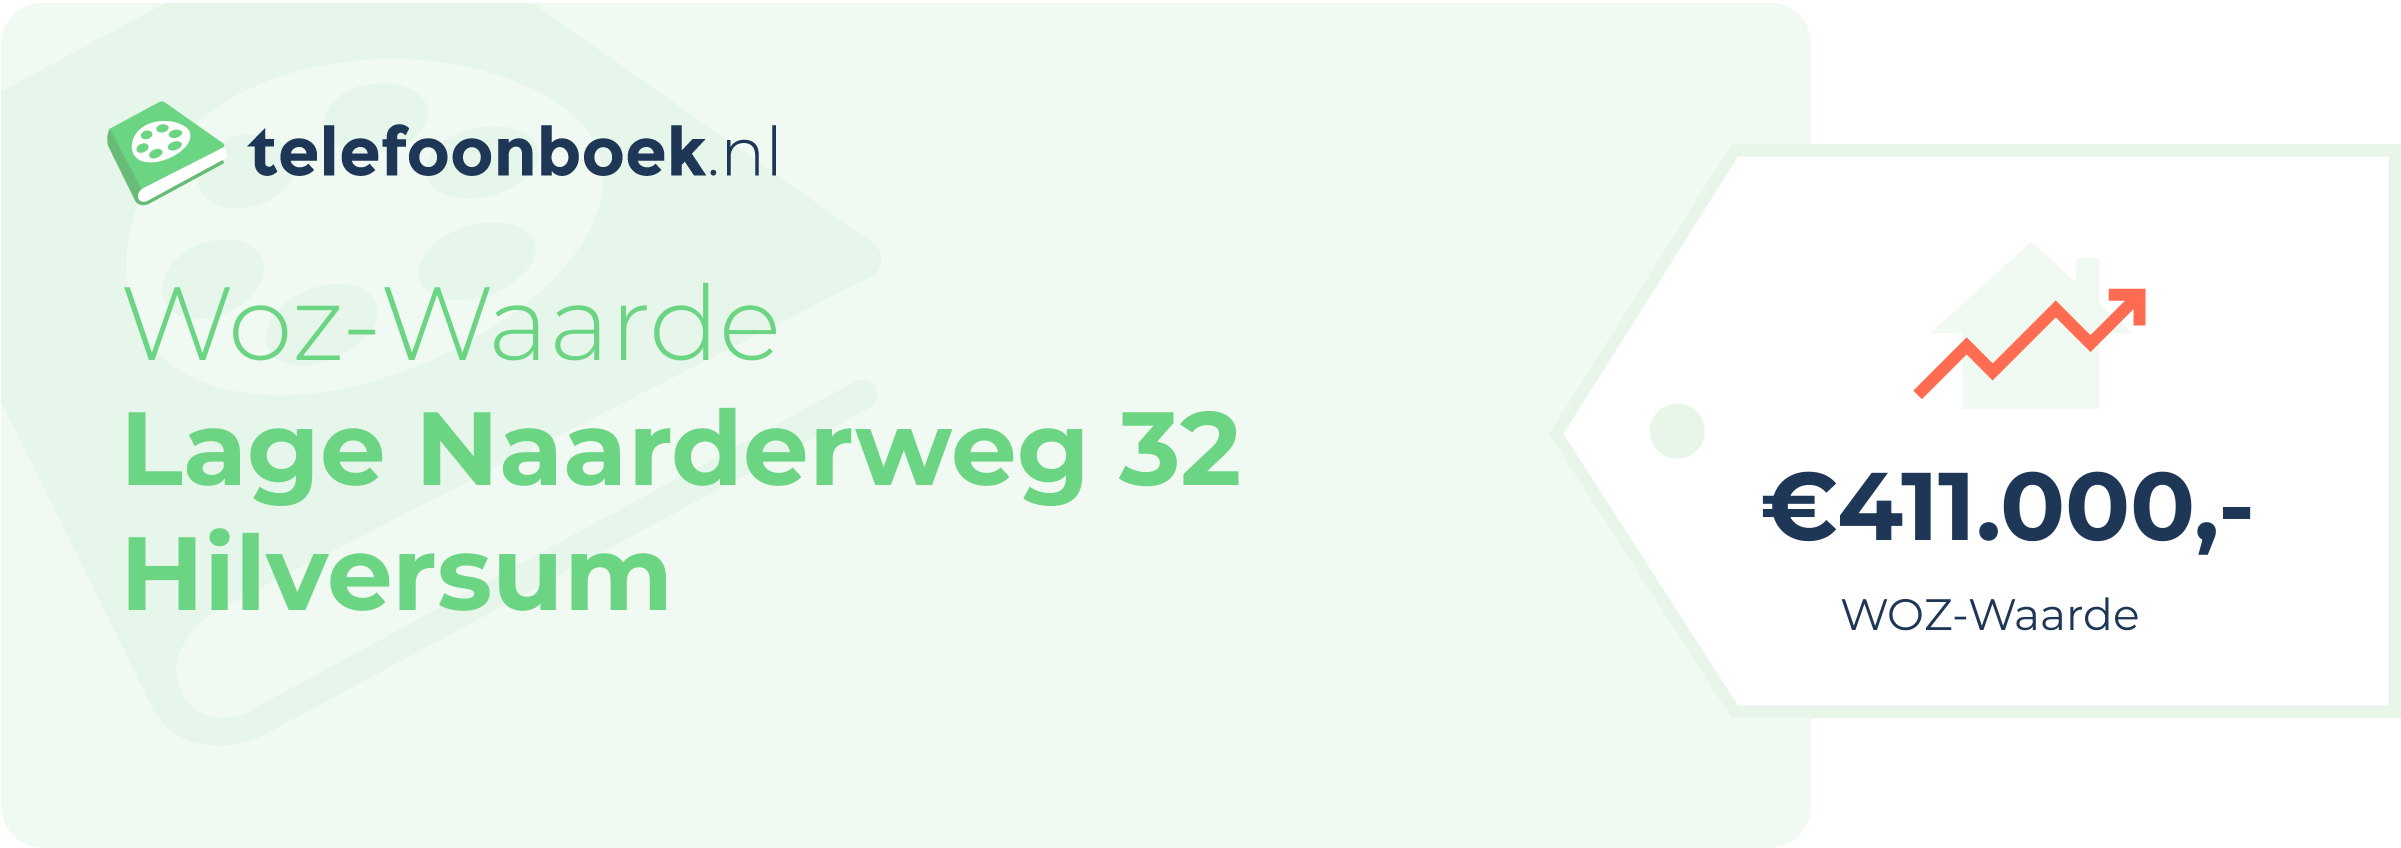 WOZ-waarde Lage Naarderweg 32 Hilversum